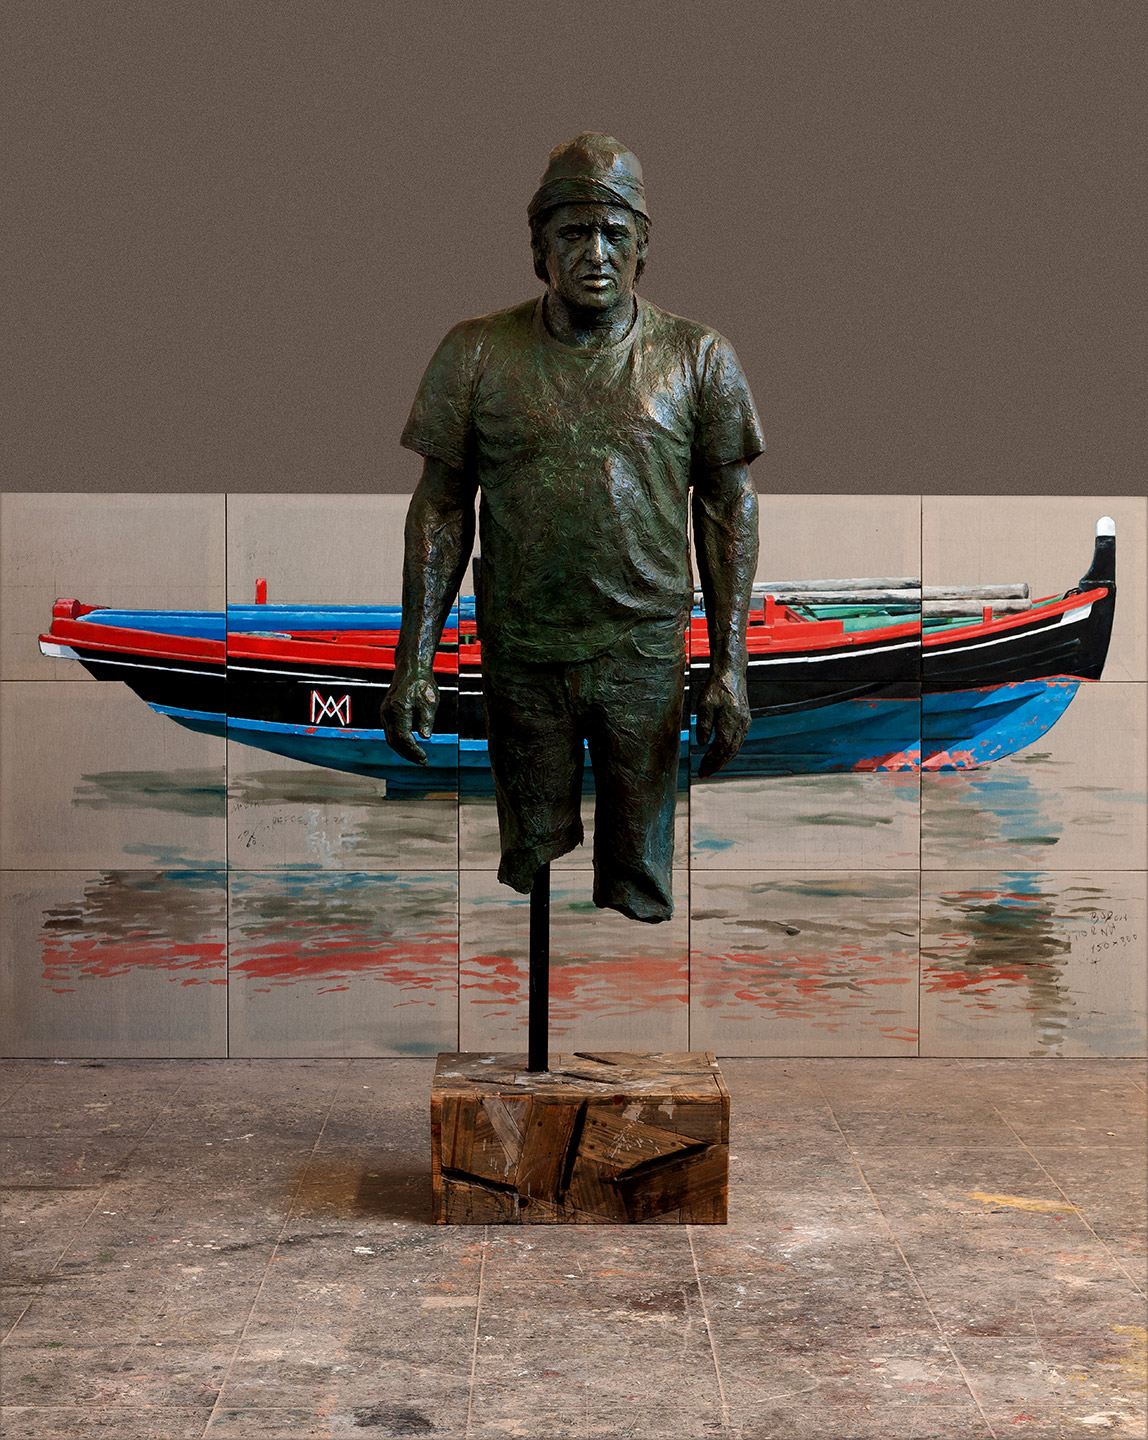 Instalación compuesta por escultura en bronce y madera y pintura al óleo, realizadas ambas por el artista plástico Manuel Quintana Martelo.